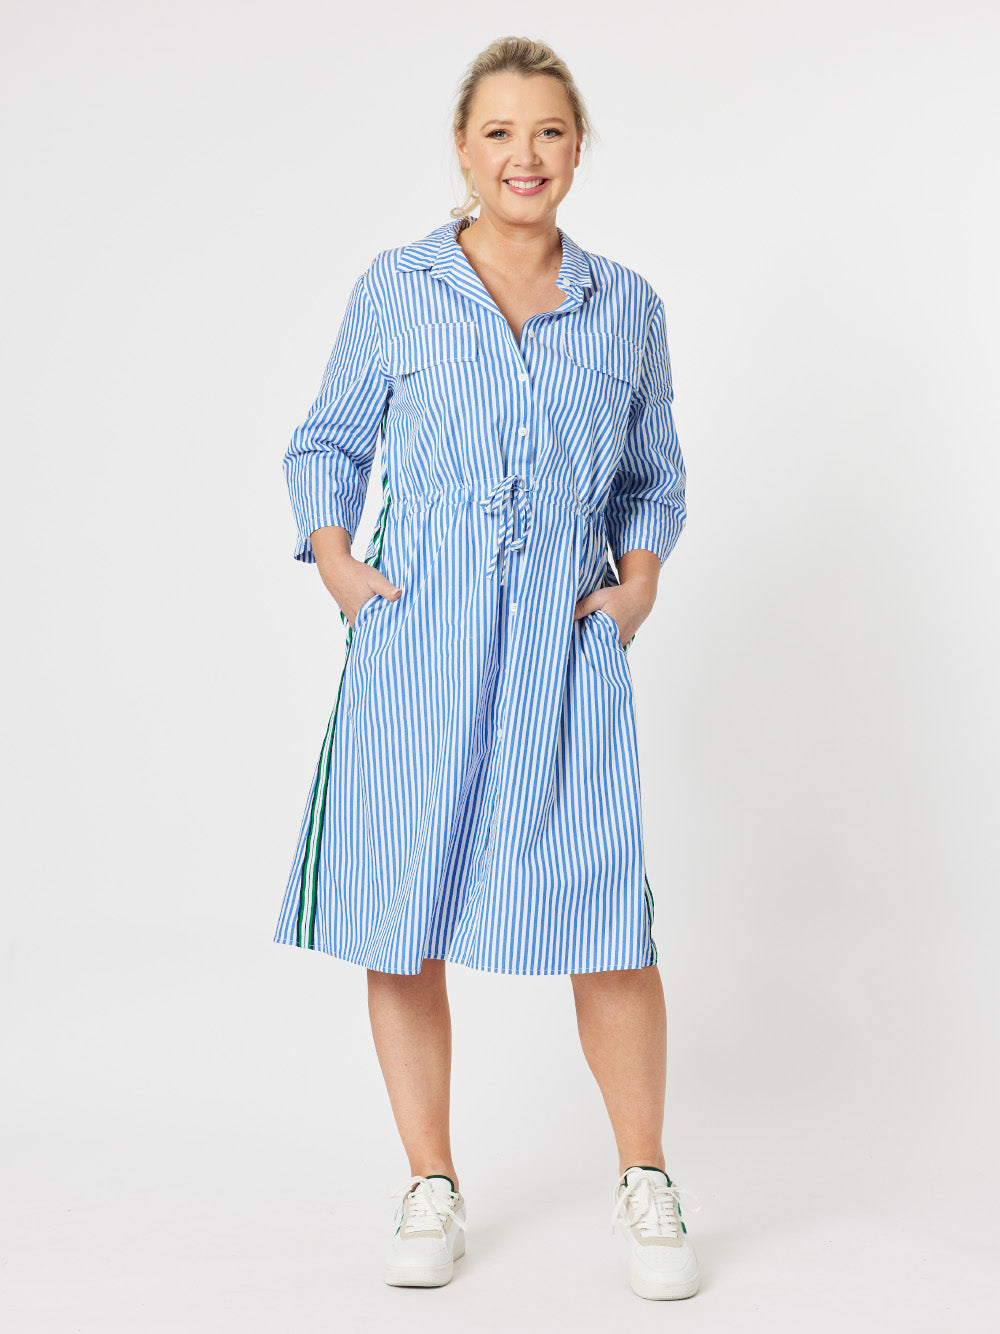 Shirty Stripe Cotton Dress - Blue